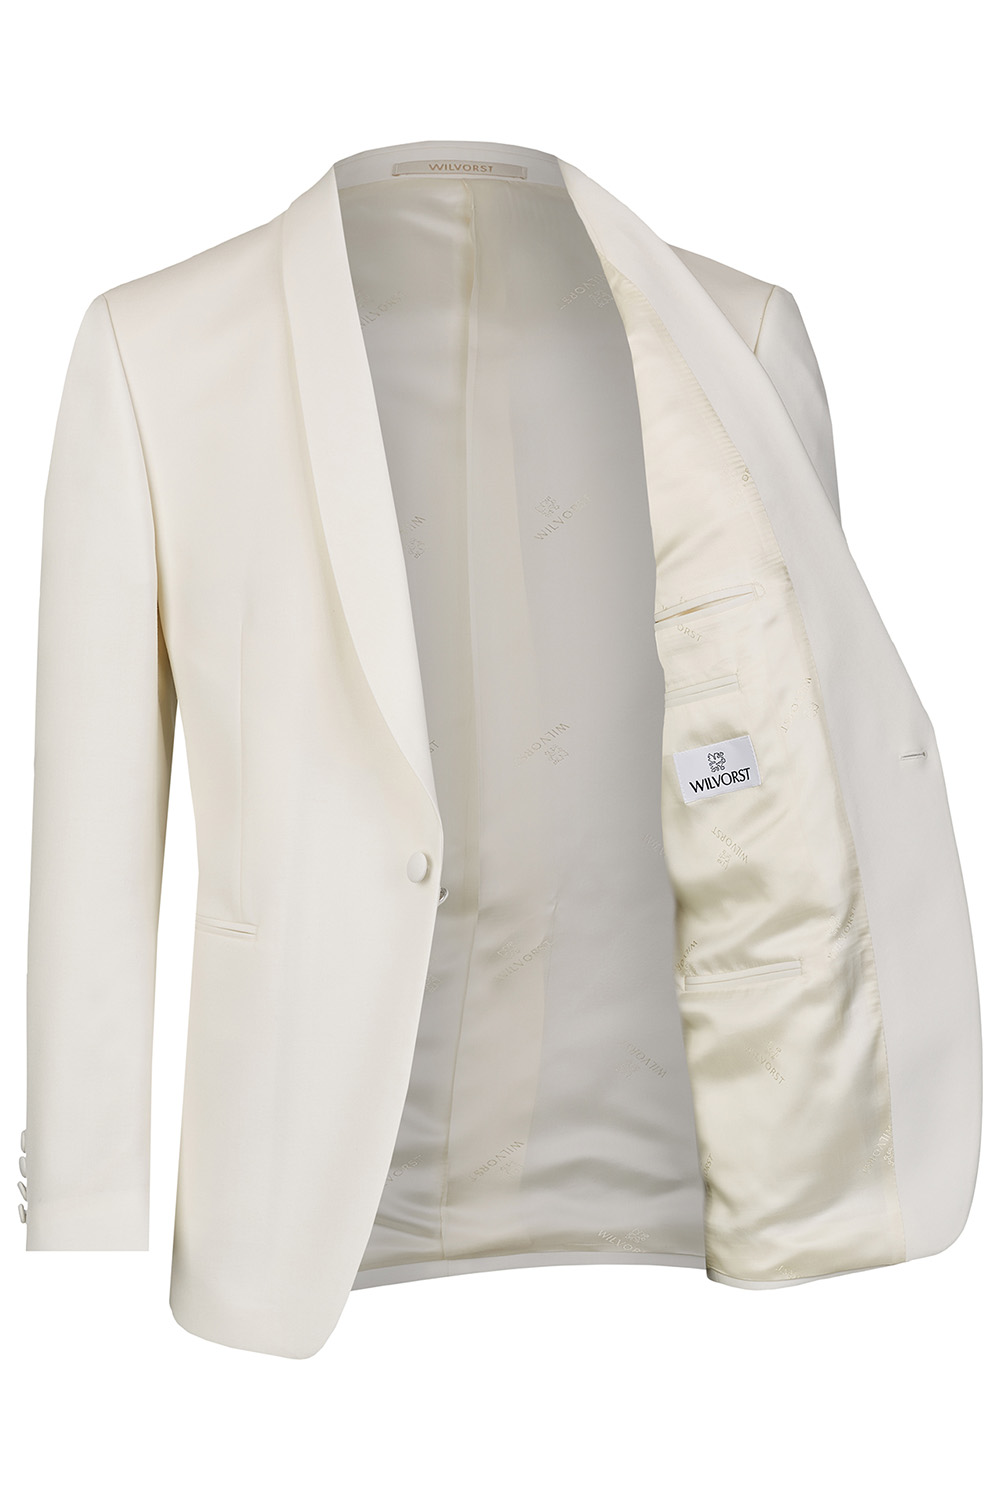 WILVORST dinner jacket bélés 401824-1 Modell 17701-0